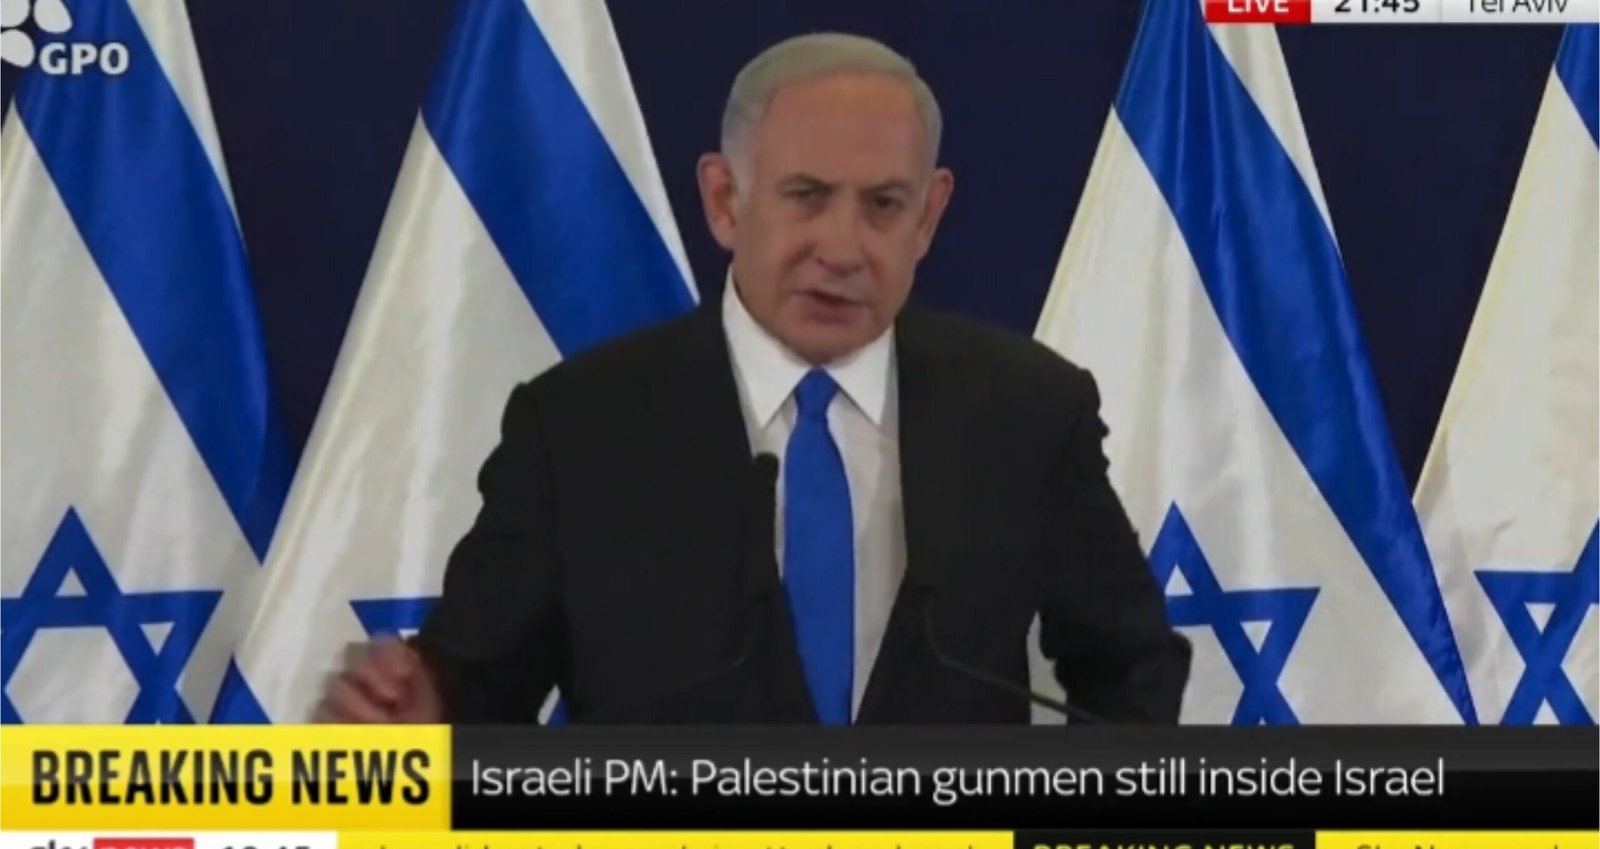 ‘O que faremos com os inimigos ecoará por gerações’, diz Netanyahu